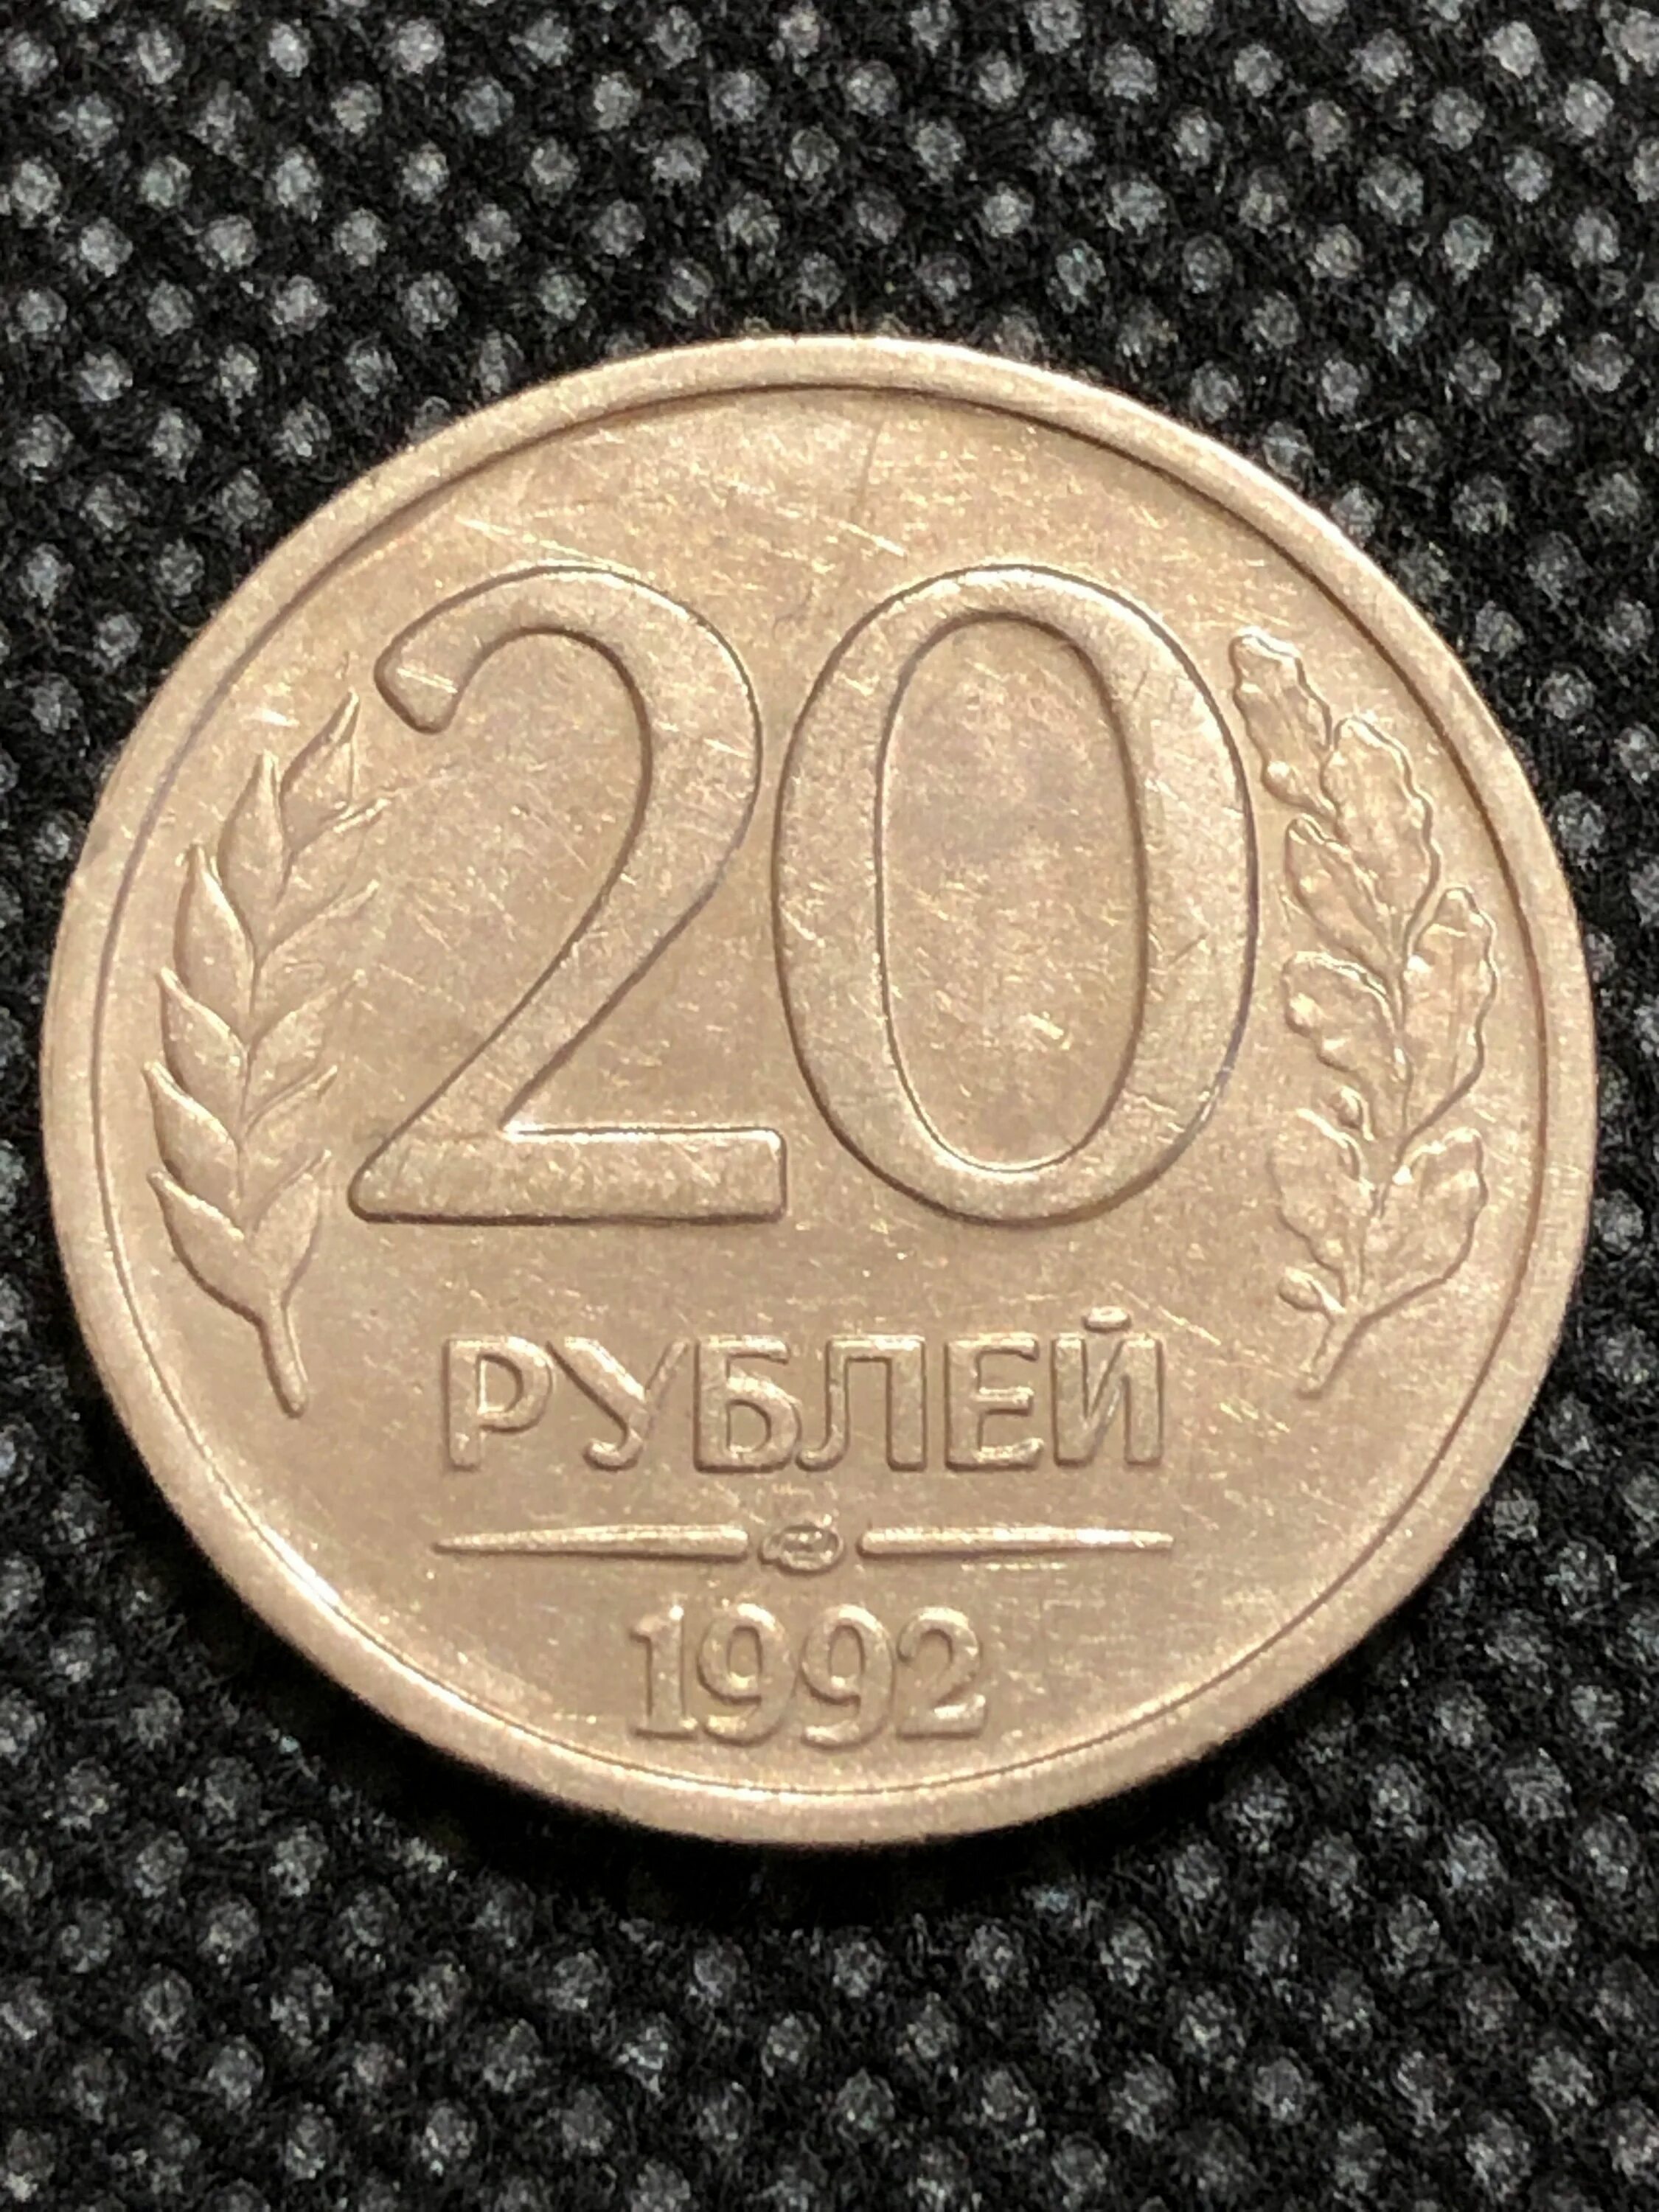 50 рублей 10 копеек. 20 Копеек 1991 года. 15 Копеек 1991 года. 20 Коп 1991 года л. 20 Лет советскому Союзу монета.